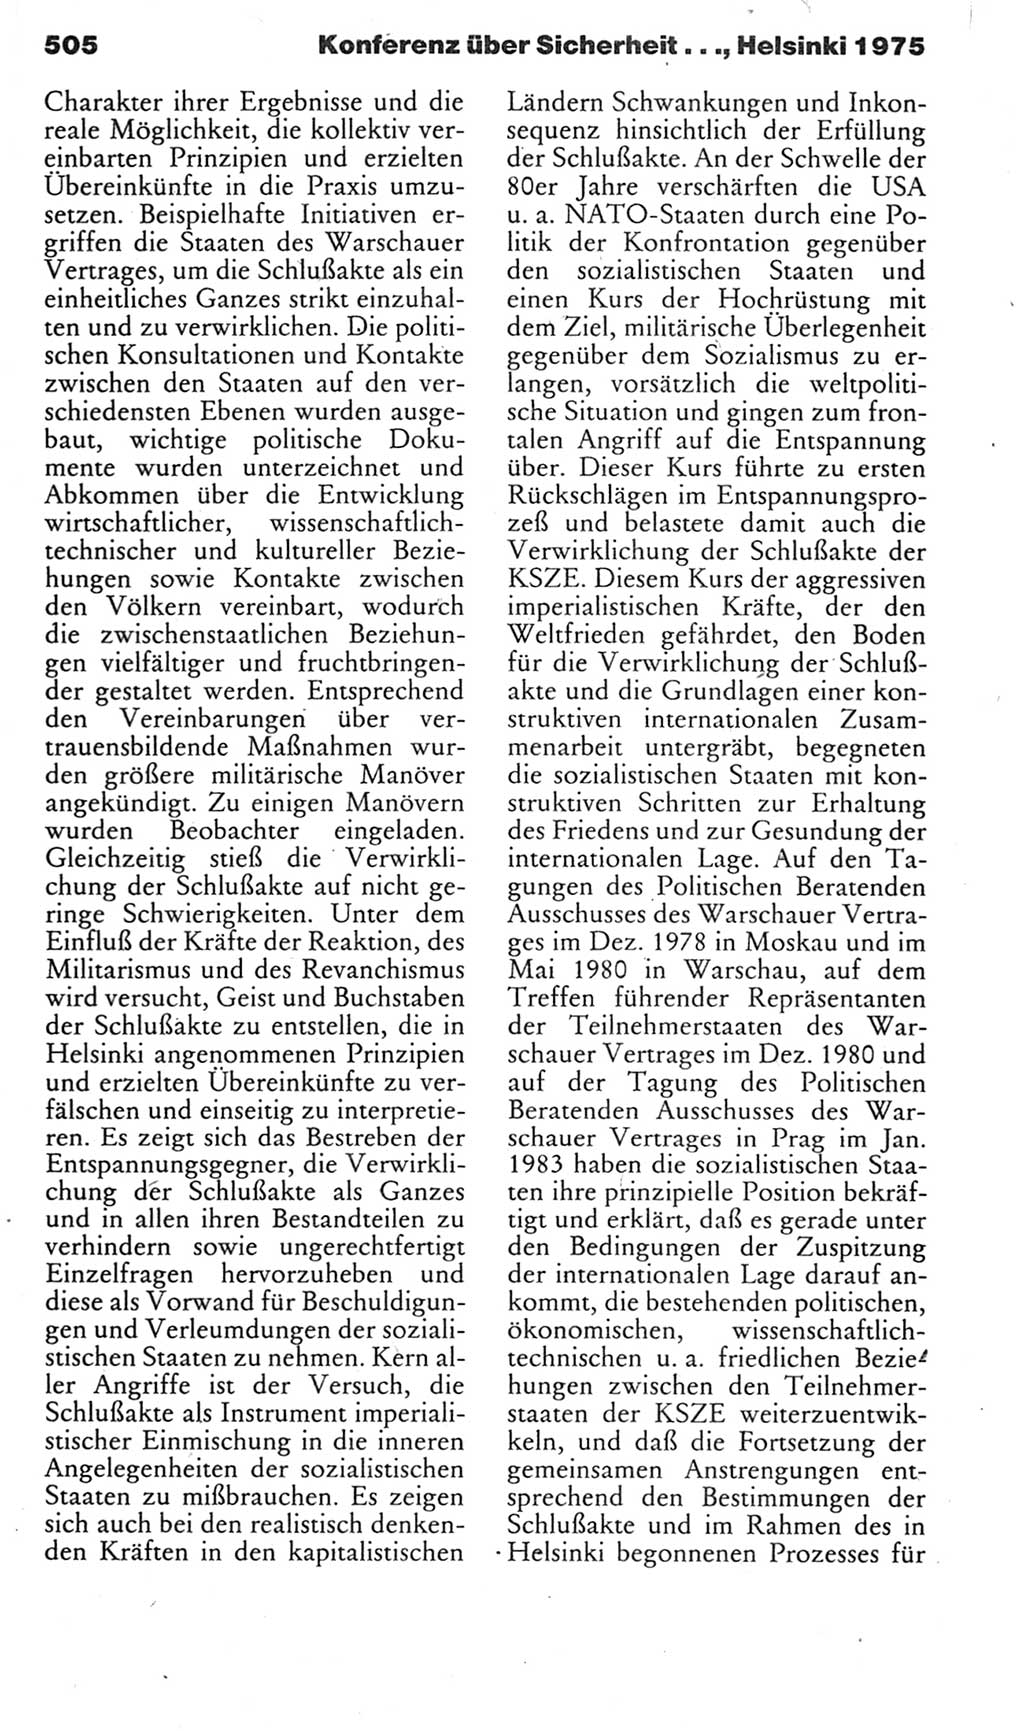 Kleines politisches Wörterbuch [Deutsche Demokratische Republik (DDR)] 1985, Seite 505 (Kl. pol. Wb. DDR 1985, S. 505)